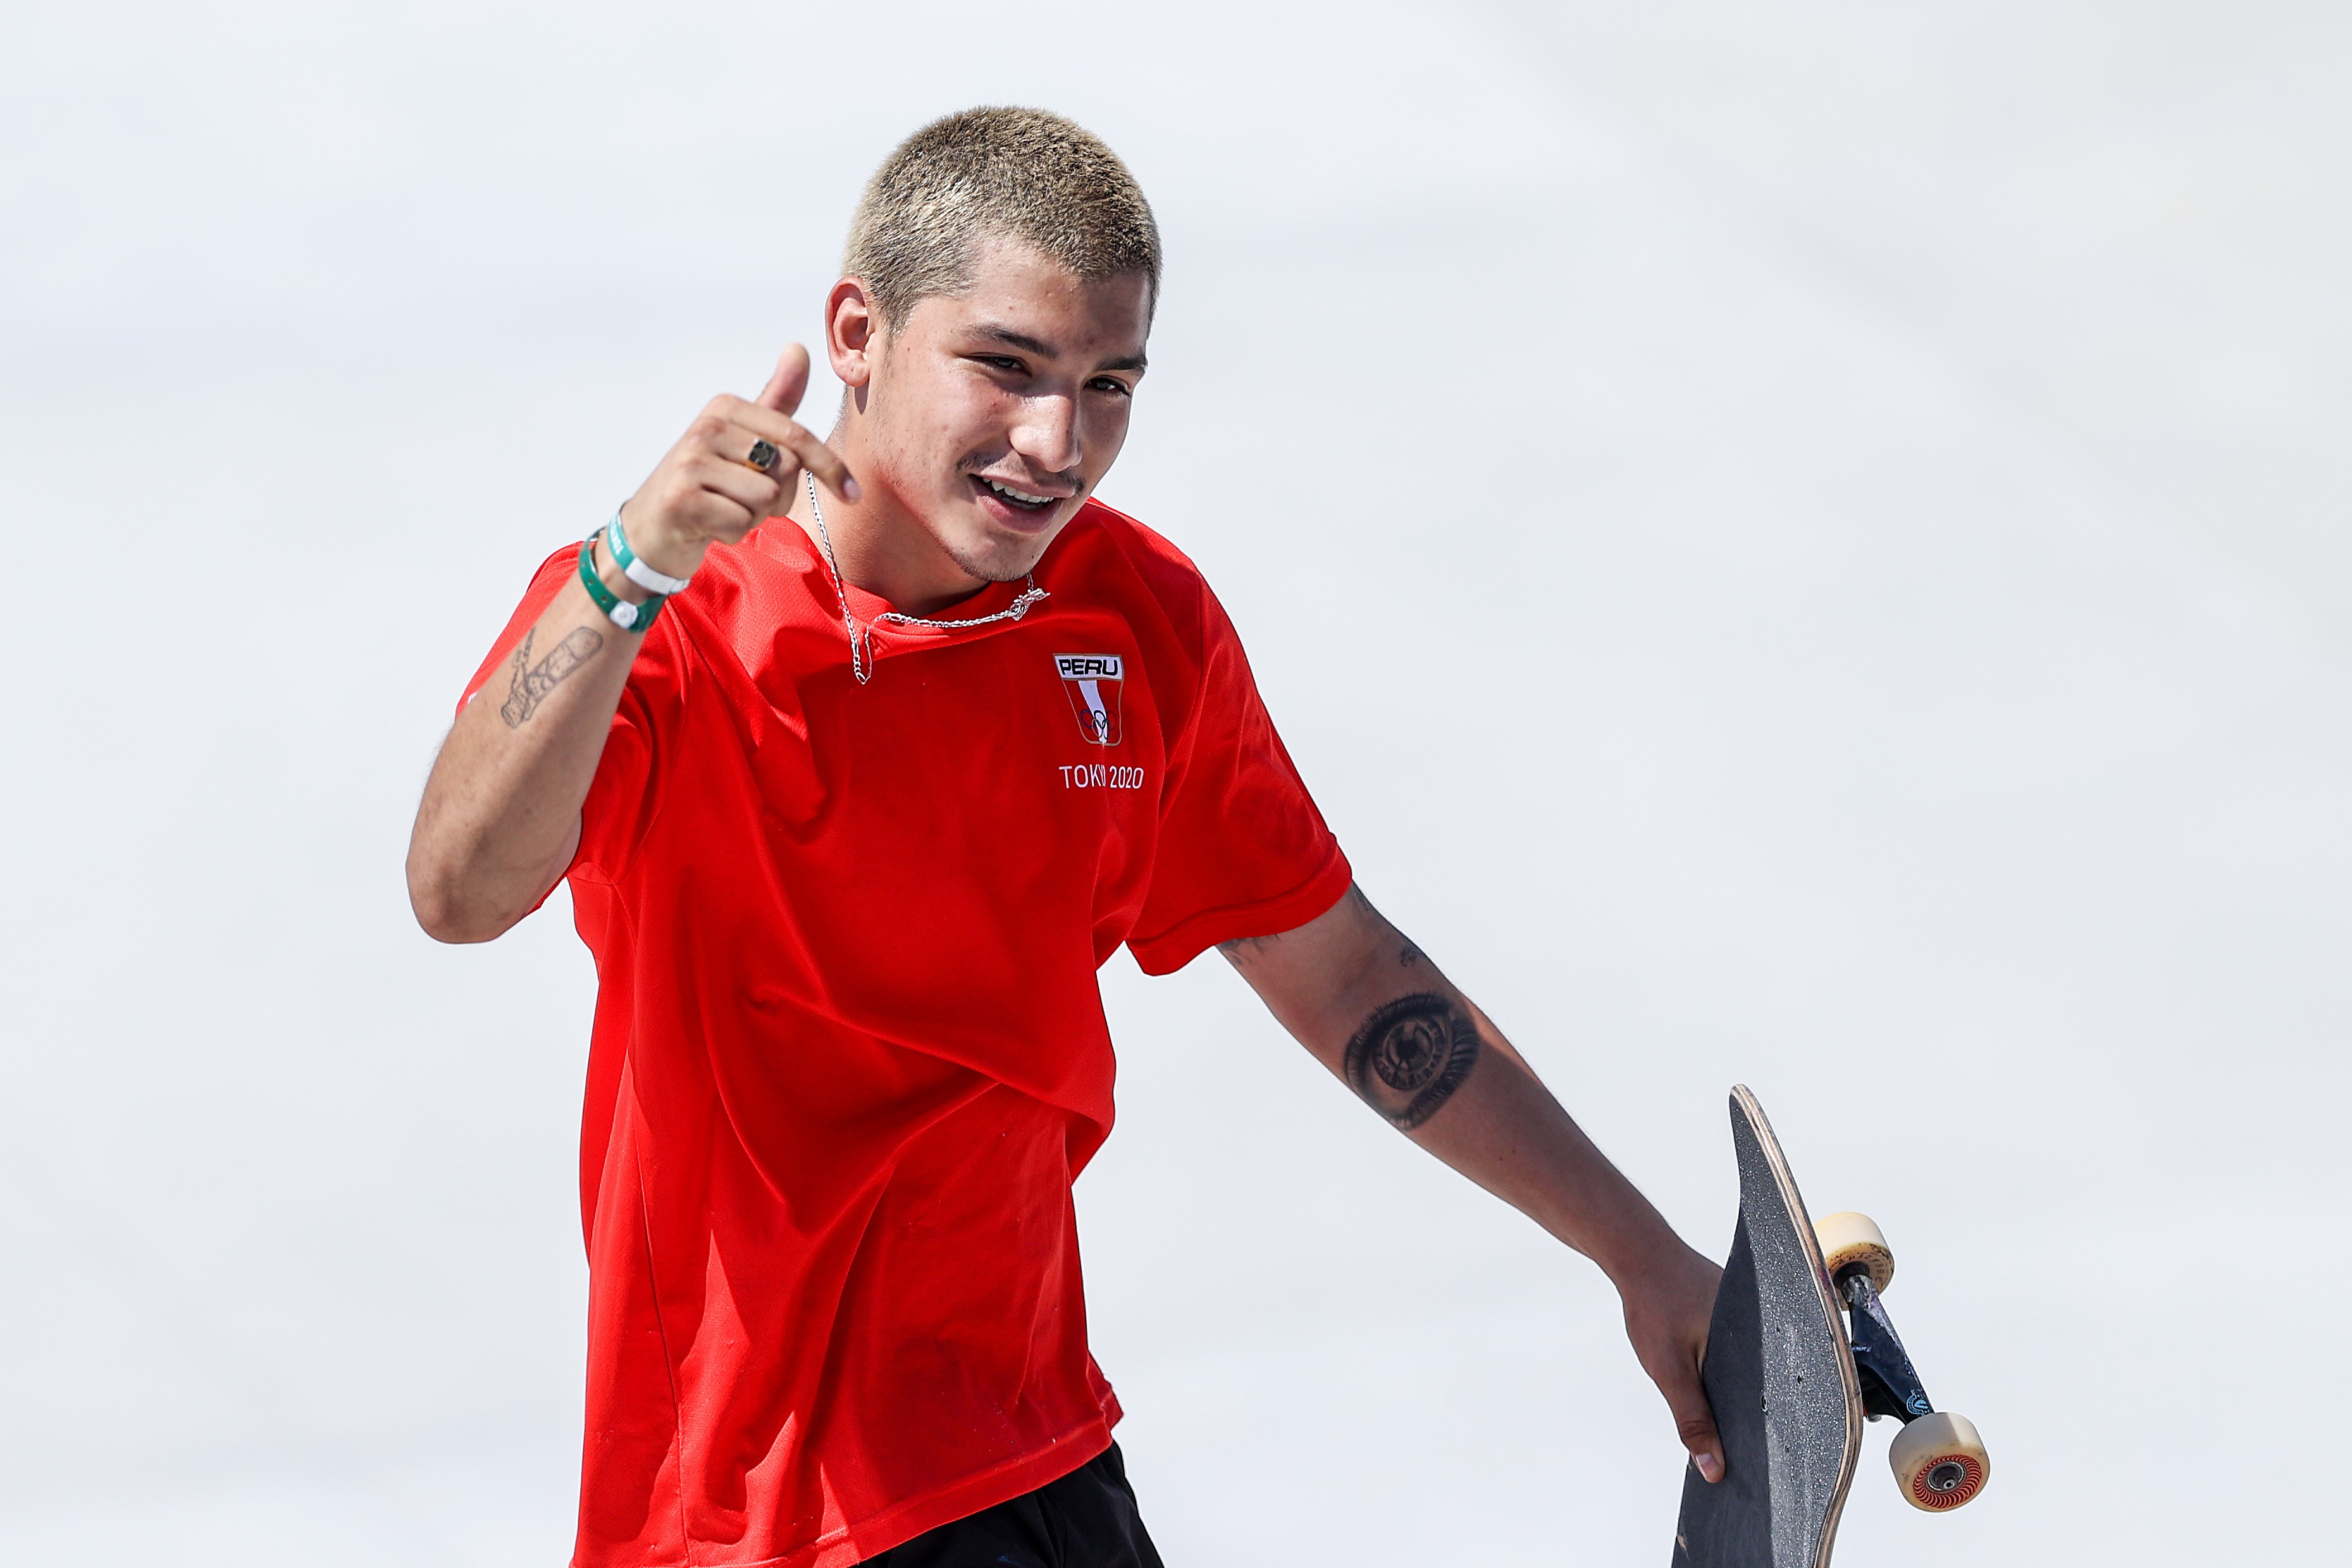 Angelo Caro hoje, durante a final do skate nos Jogos Olímpicos de Tóquio 2020 (Foto: Getty Images)